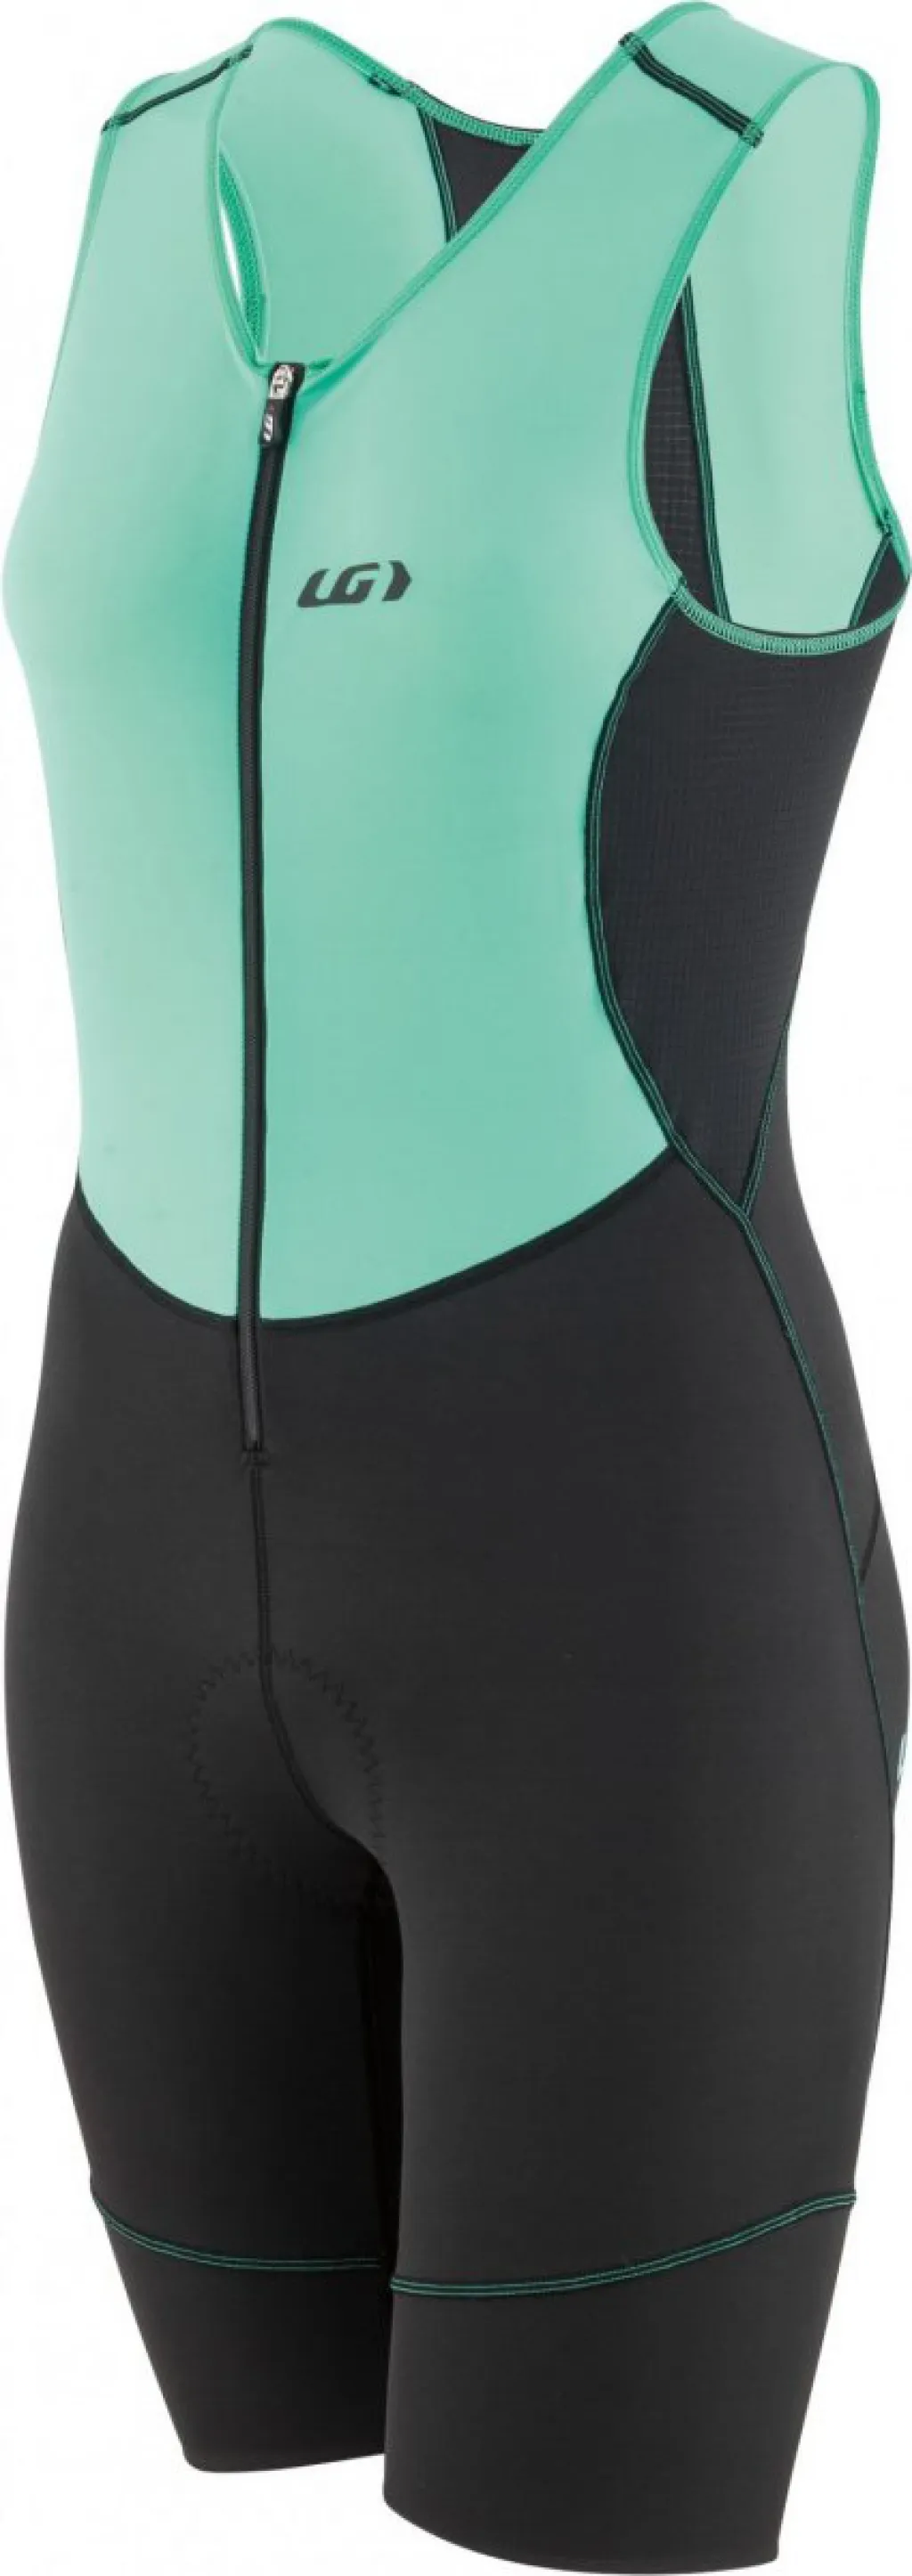 Велокостюм Garneau WS Tri Comp Triathlon Suit черно-зеленый